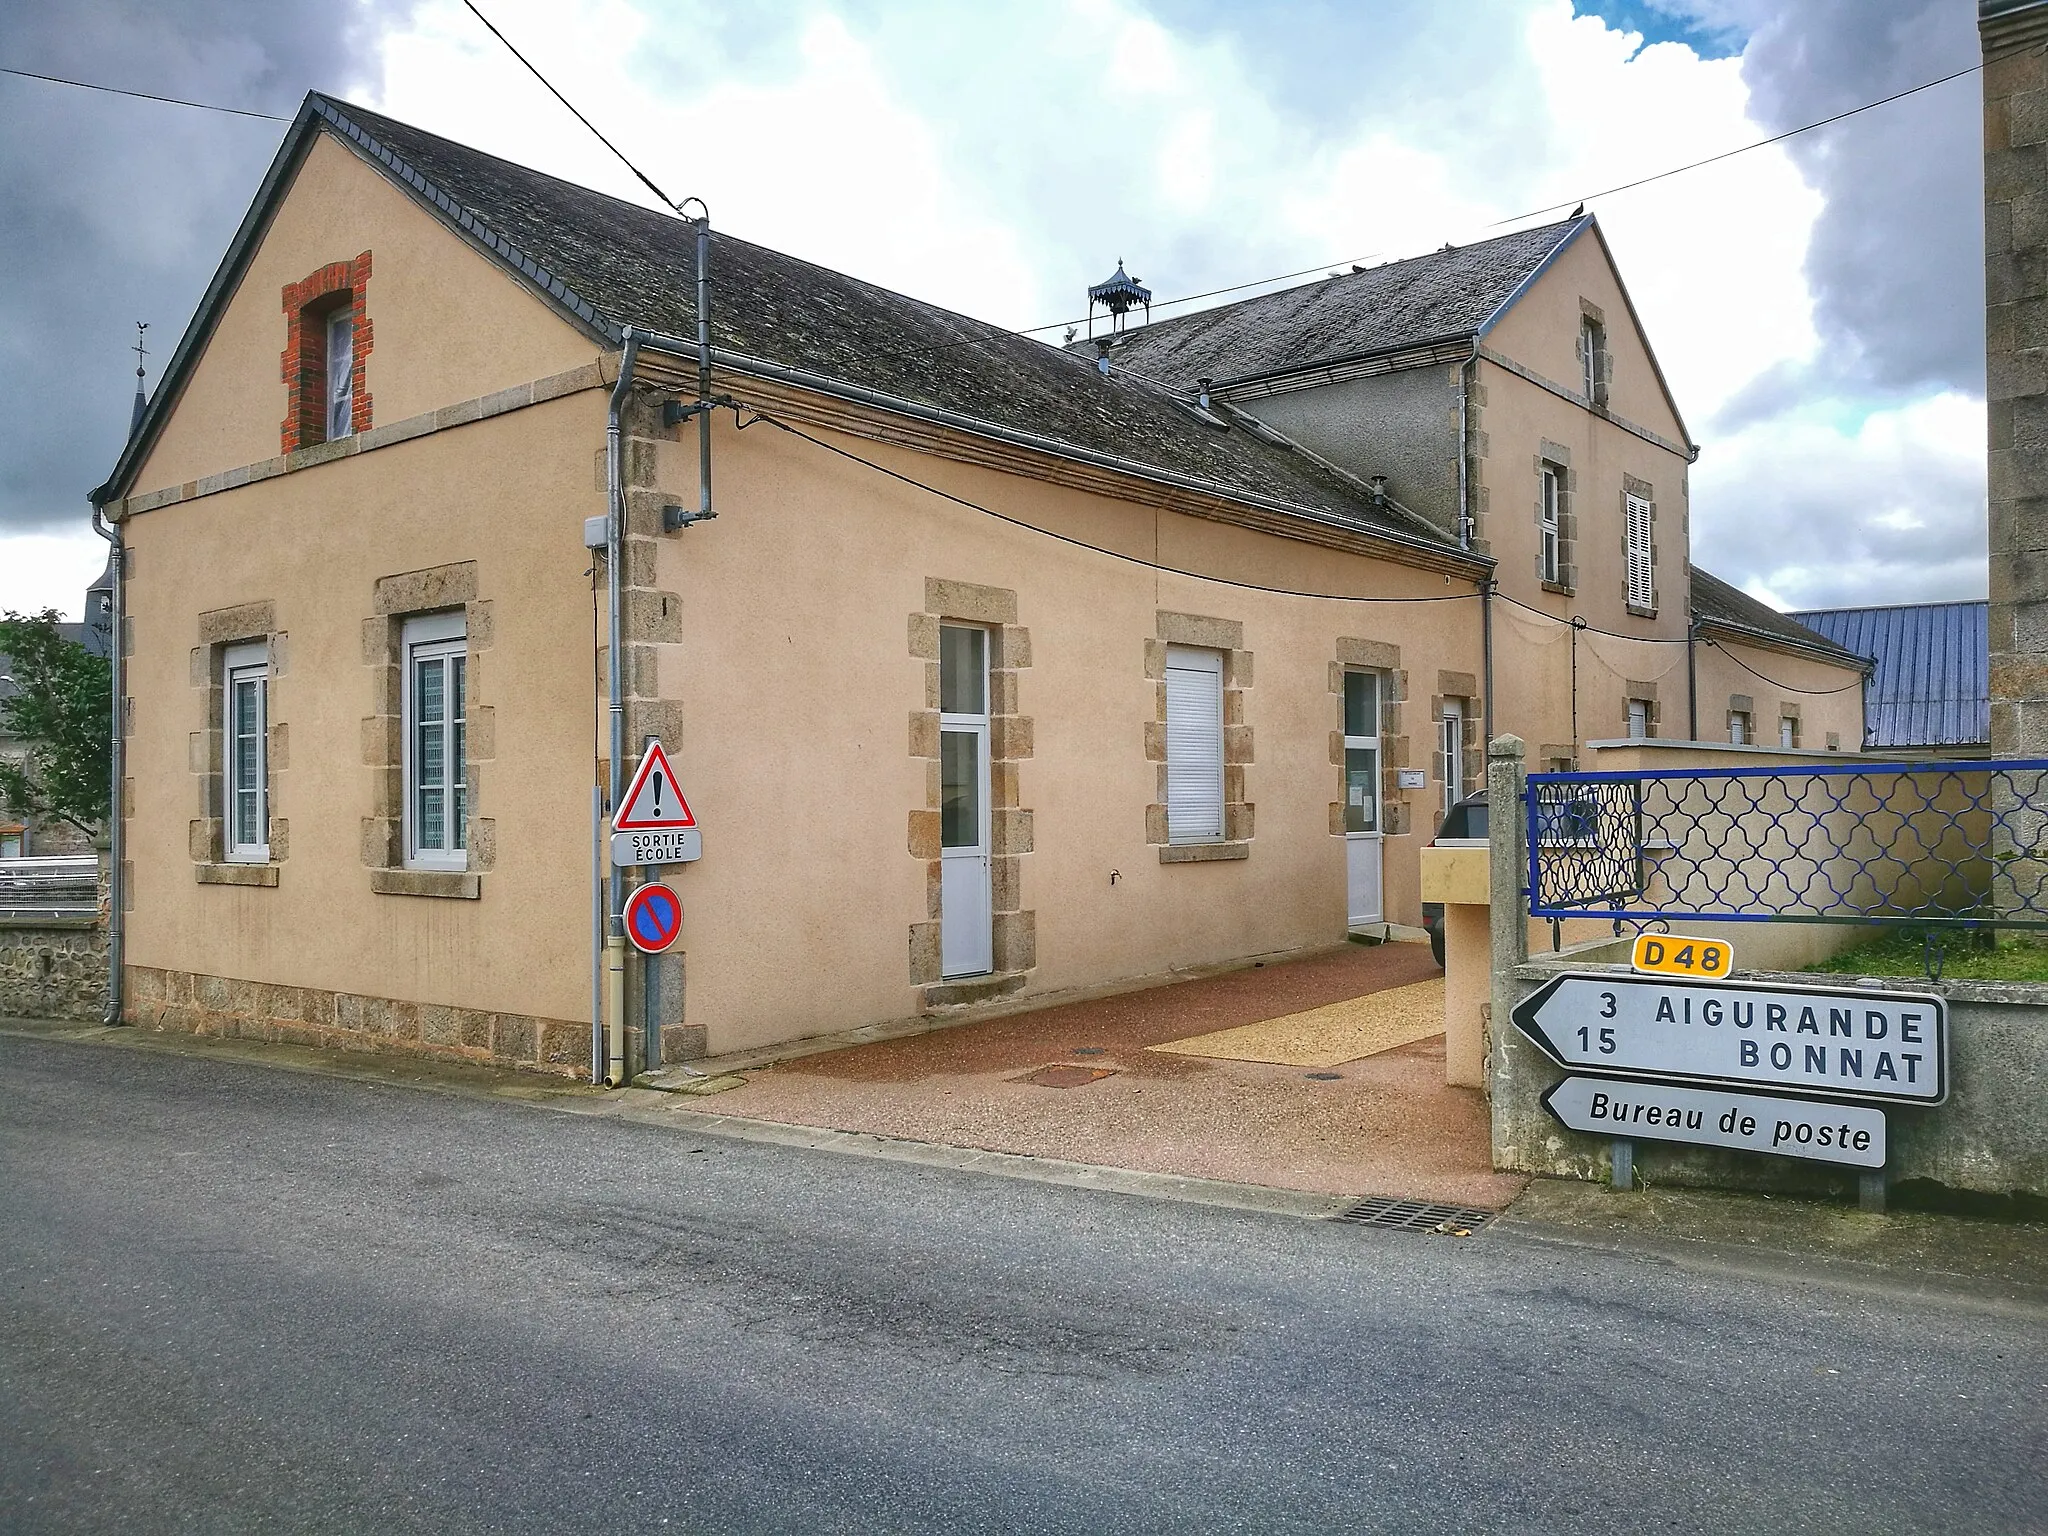 Photo showing: Vue du bâtiment de la mairie de la commune de Lourdoueix-Saint-Pierre, Creuse, France, depuis la rue principale du village.